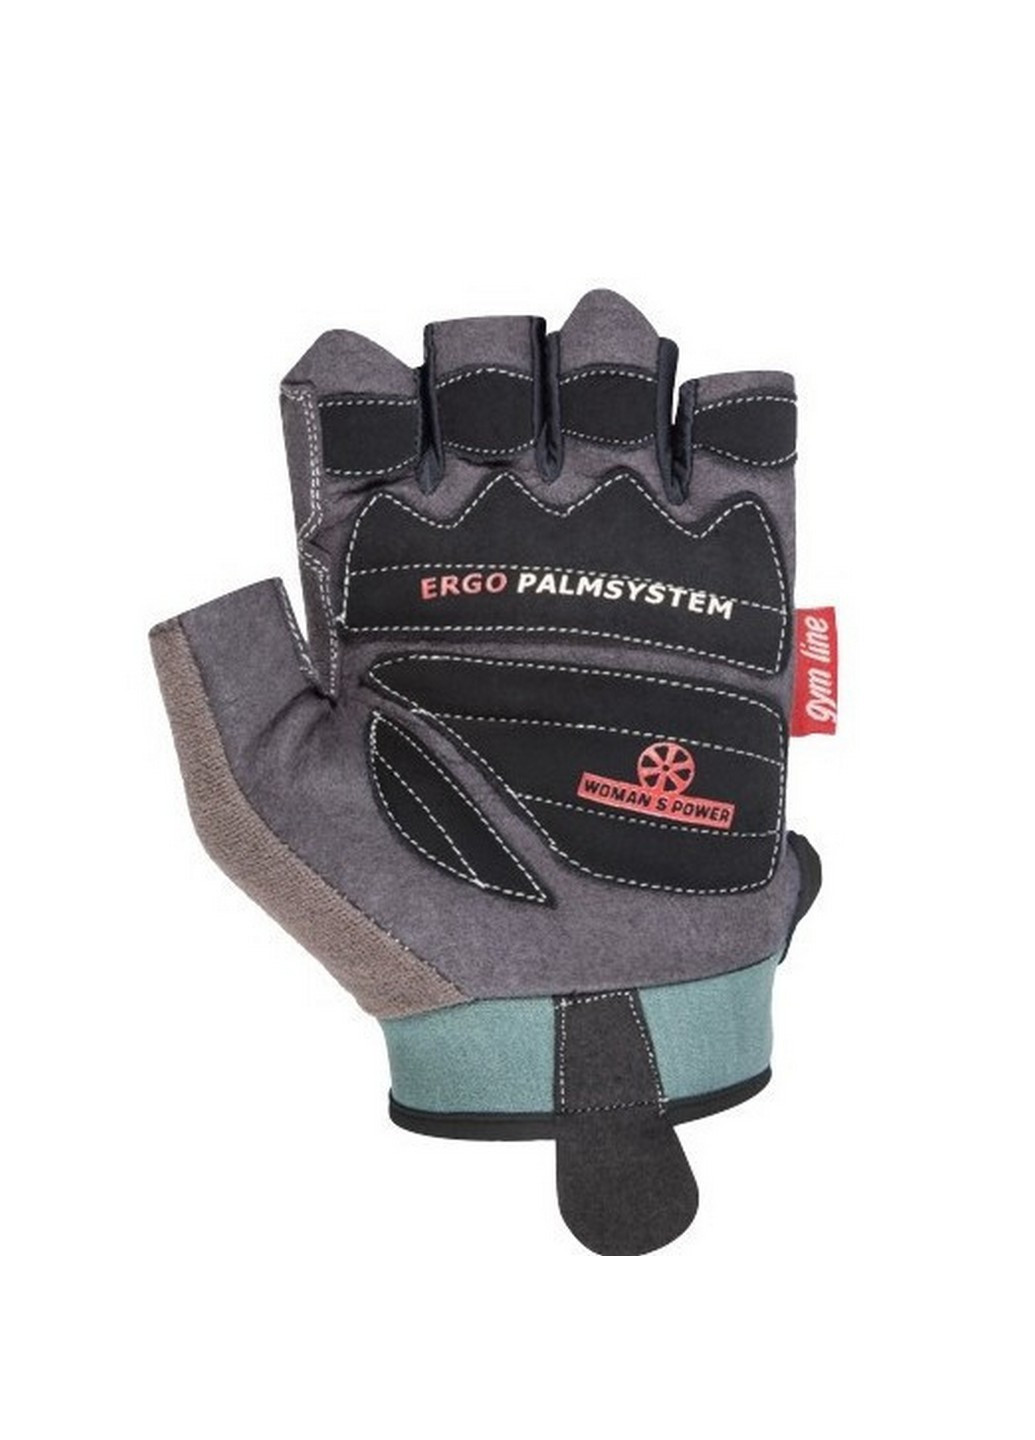 Жіночі рукавички для фітнесу S Power System (232677756)